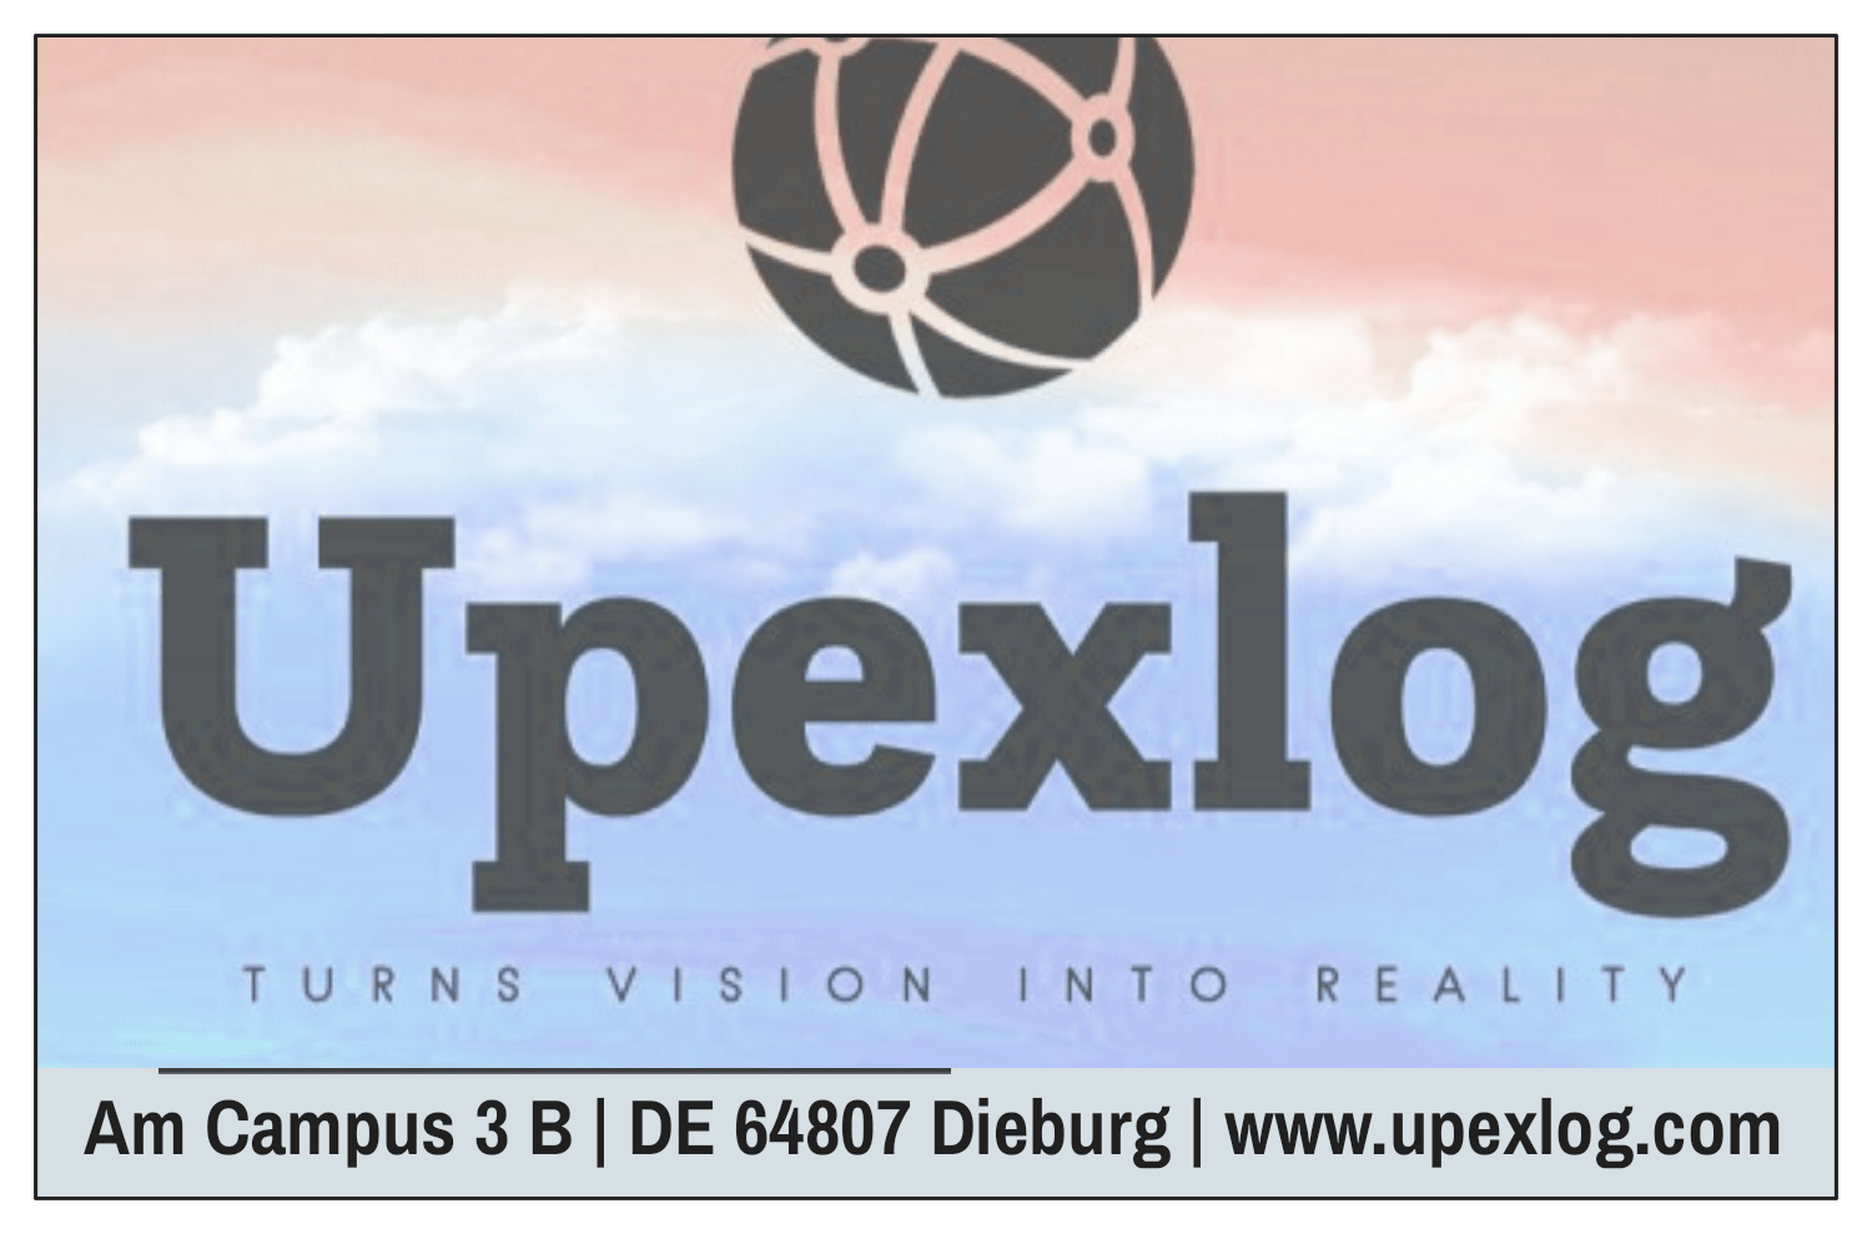 Upexlog Services